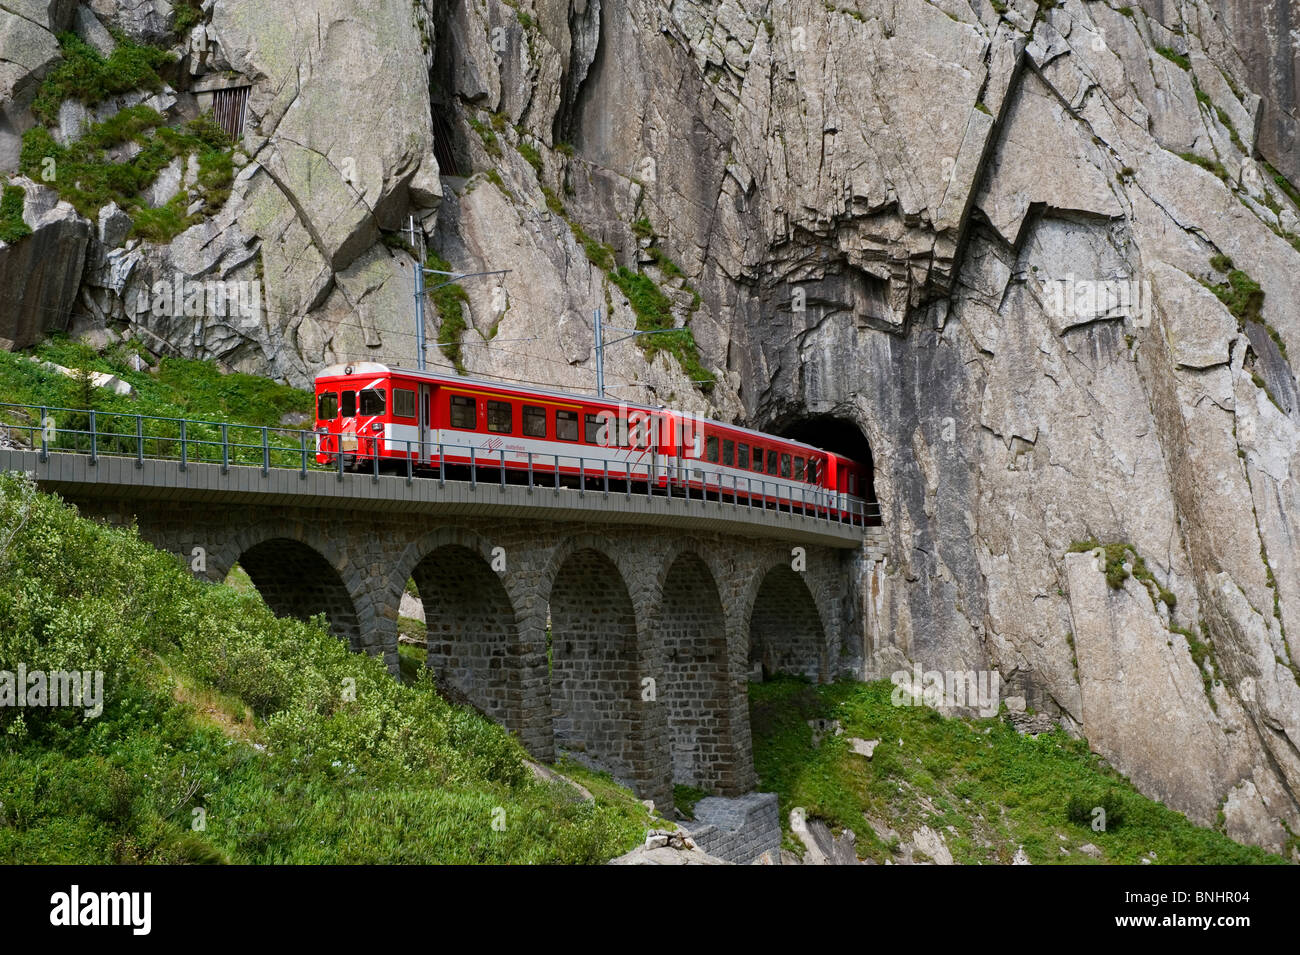 La Suisse. Voyage en Train en Suisse. Le Matterhorn-Gotthard bahn train passe au-dessus du Pont du Diable, le Teufelsbr Banque D'Images